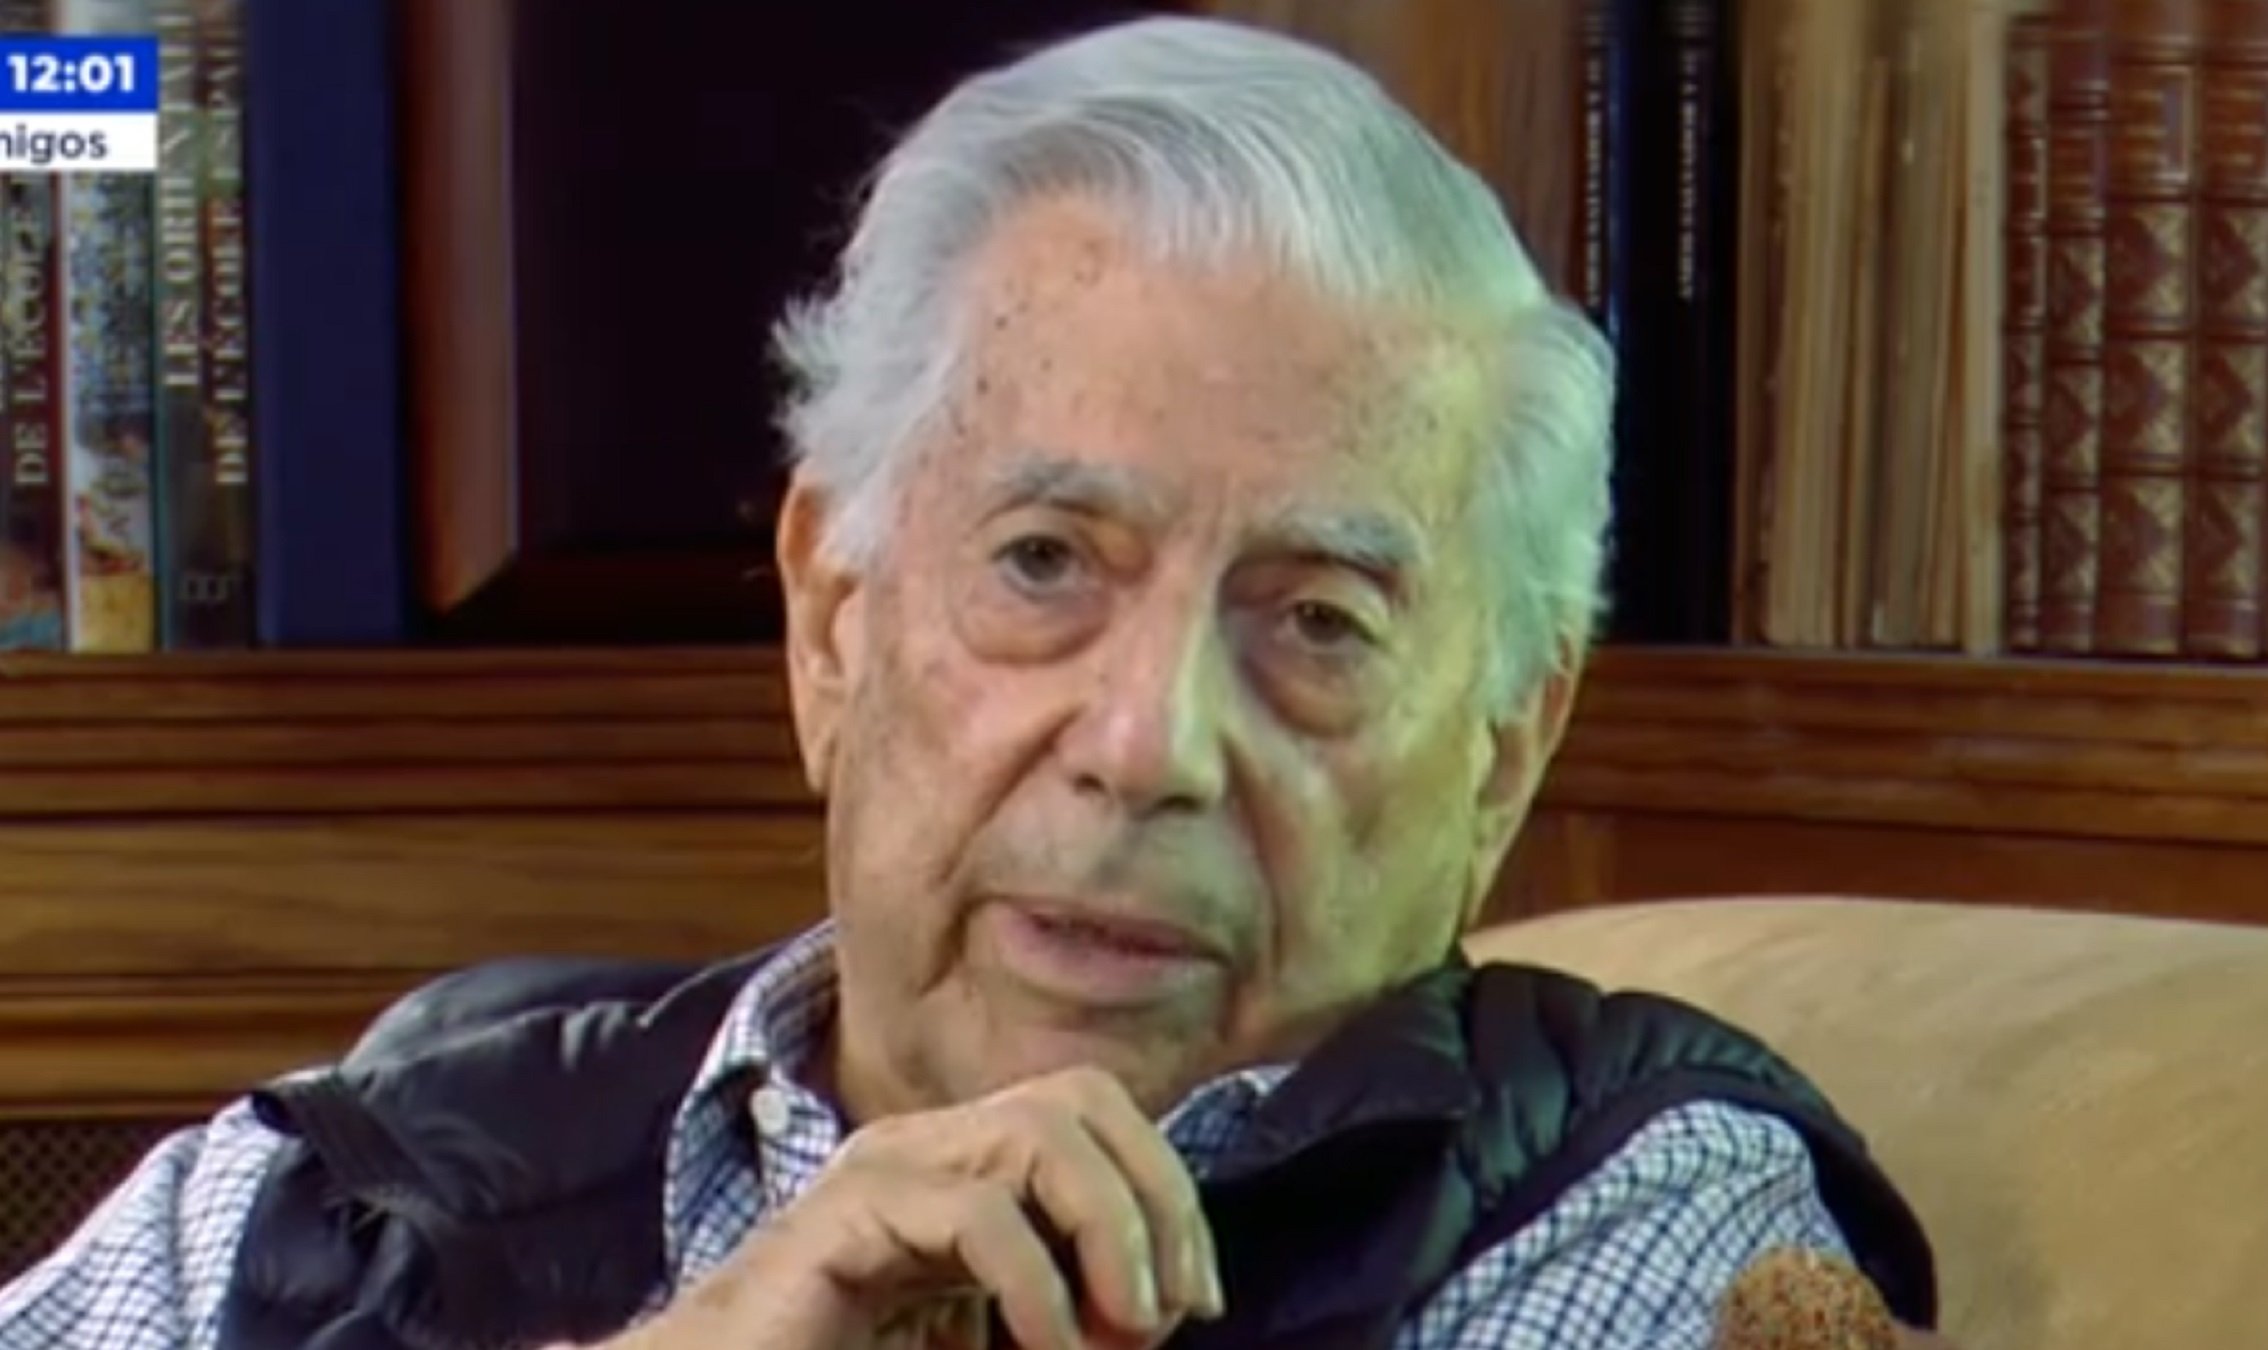 Destrozan a Vargas Llosa, infecto comentario en 'Espejo público: "Sádico, patán"